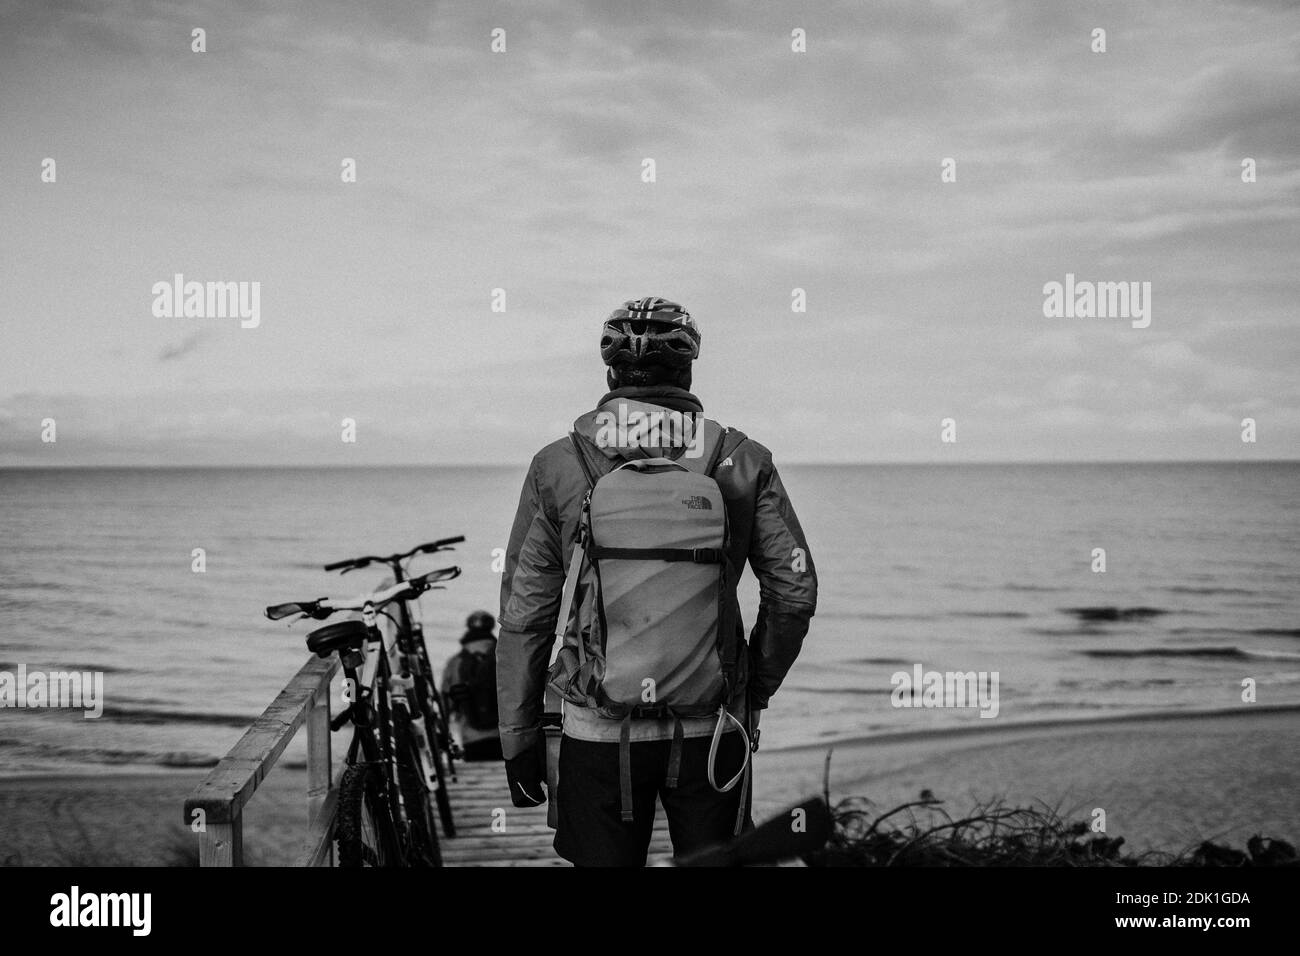 Une belle photo en niveaux de gris d'un homme debout en face du lac. Tourisme avec un vélo sur la plage Banque D'Images